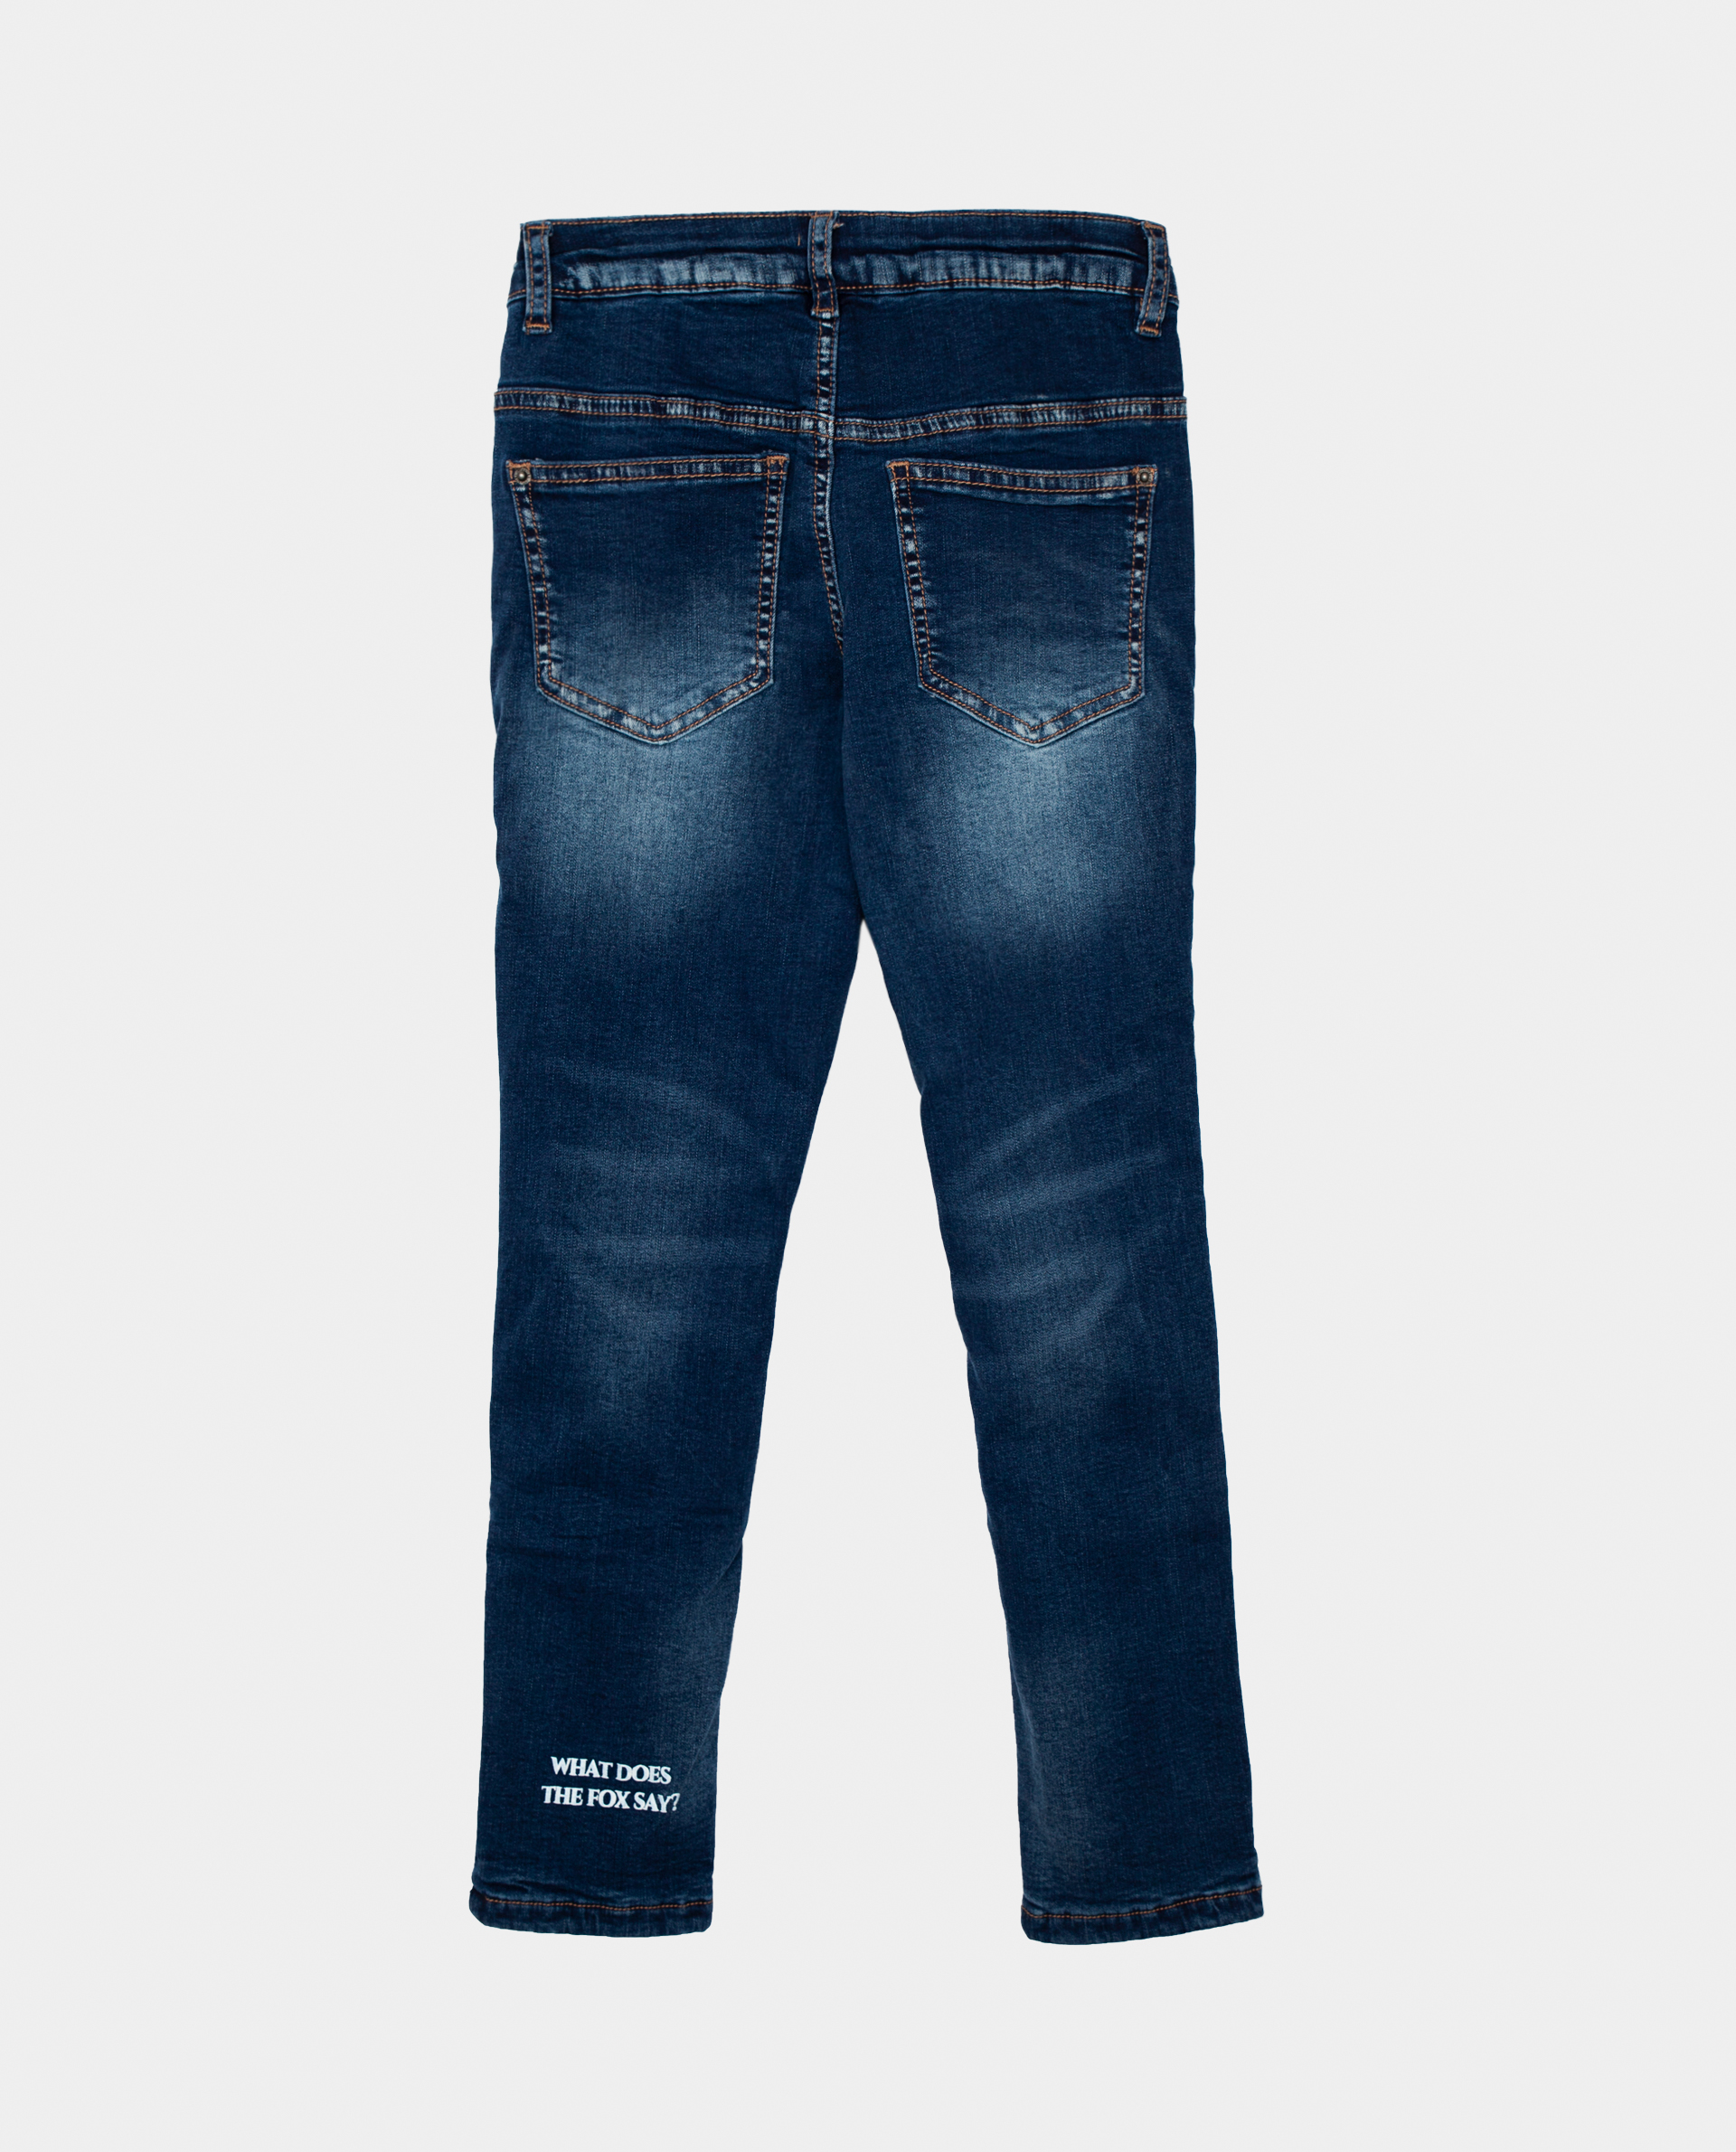 Голубые джинсы утепленные Gulliver 22002GMC6402, размер 104, цвет голубой regular fit / прямые - фото 2